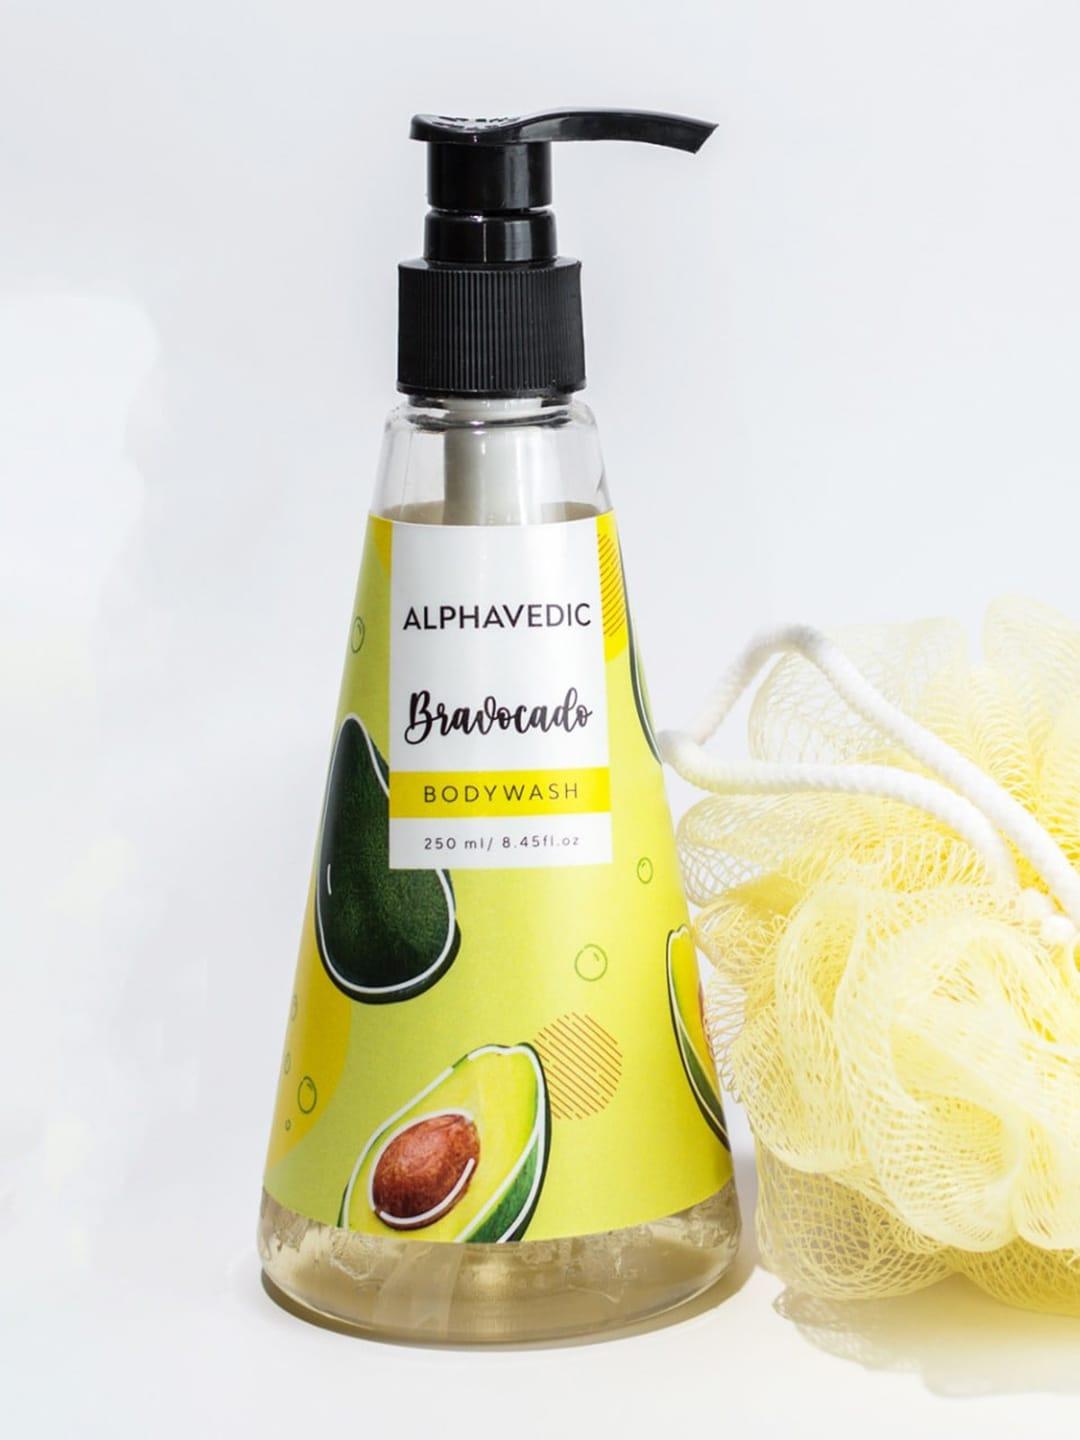 ALPHAVEDIC Bravocado Body Wash with Aloe Vera & Vitamin E 250 ml